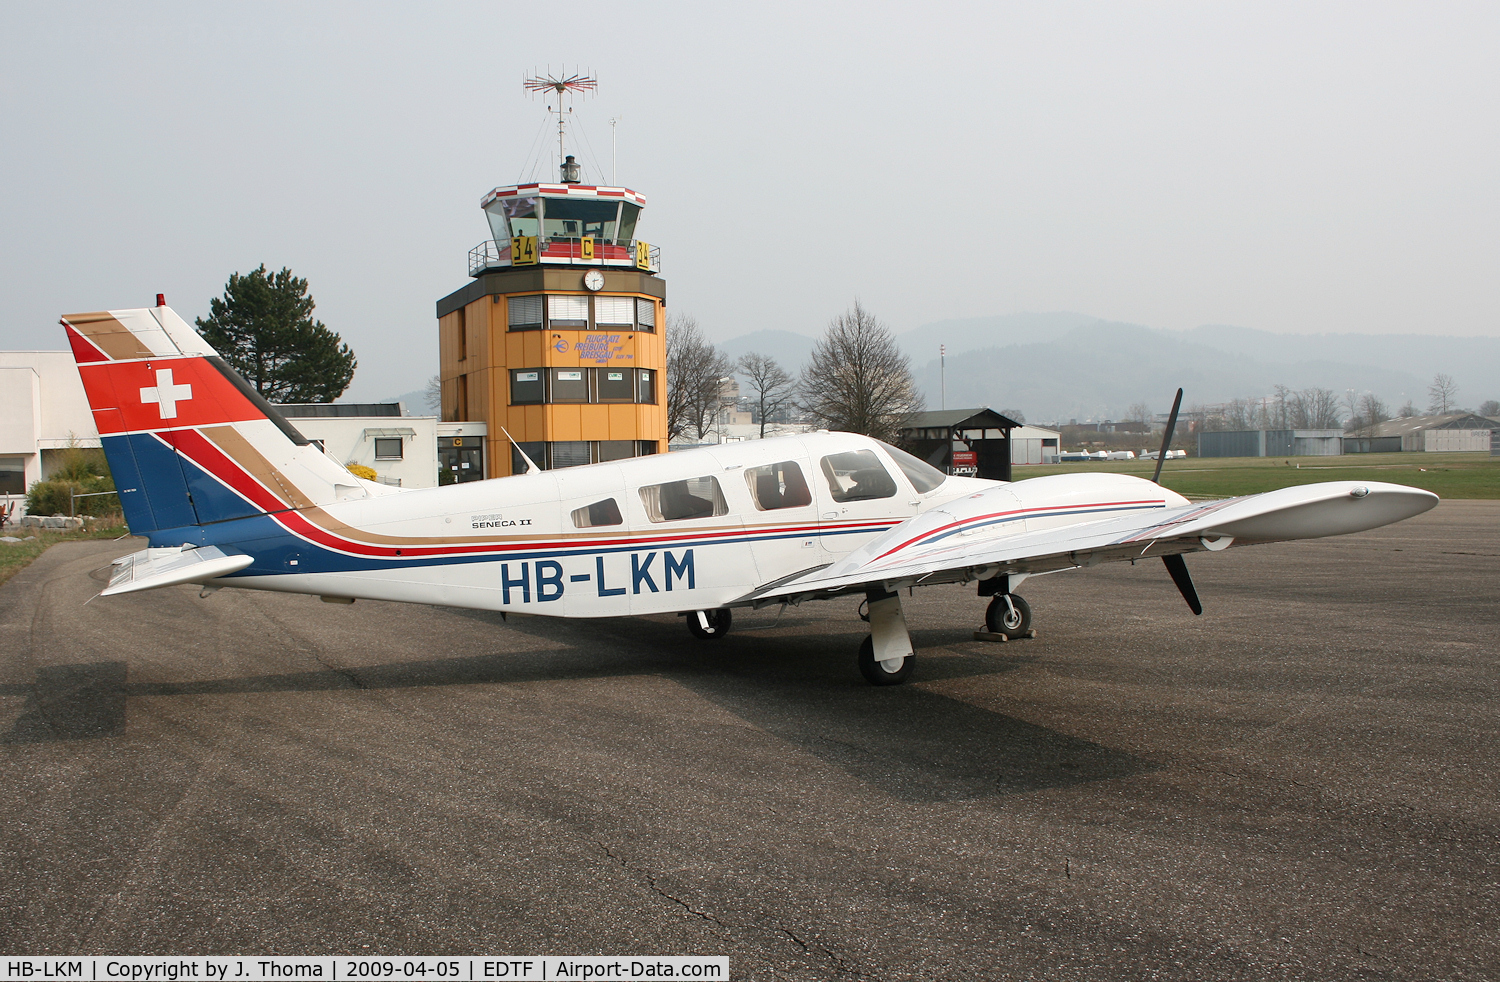 HB-LKM, 1979 Piper PA-34-200T C/N 34-7970106, Piper PA-34-200T Seneca II